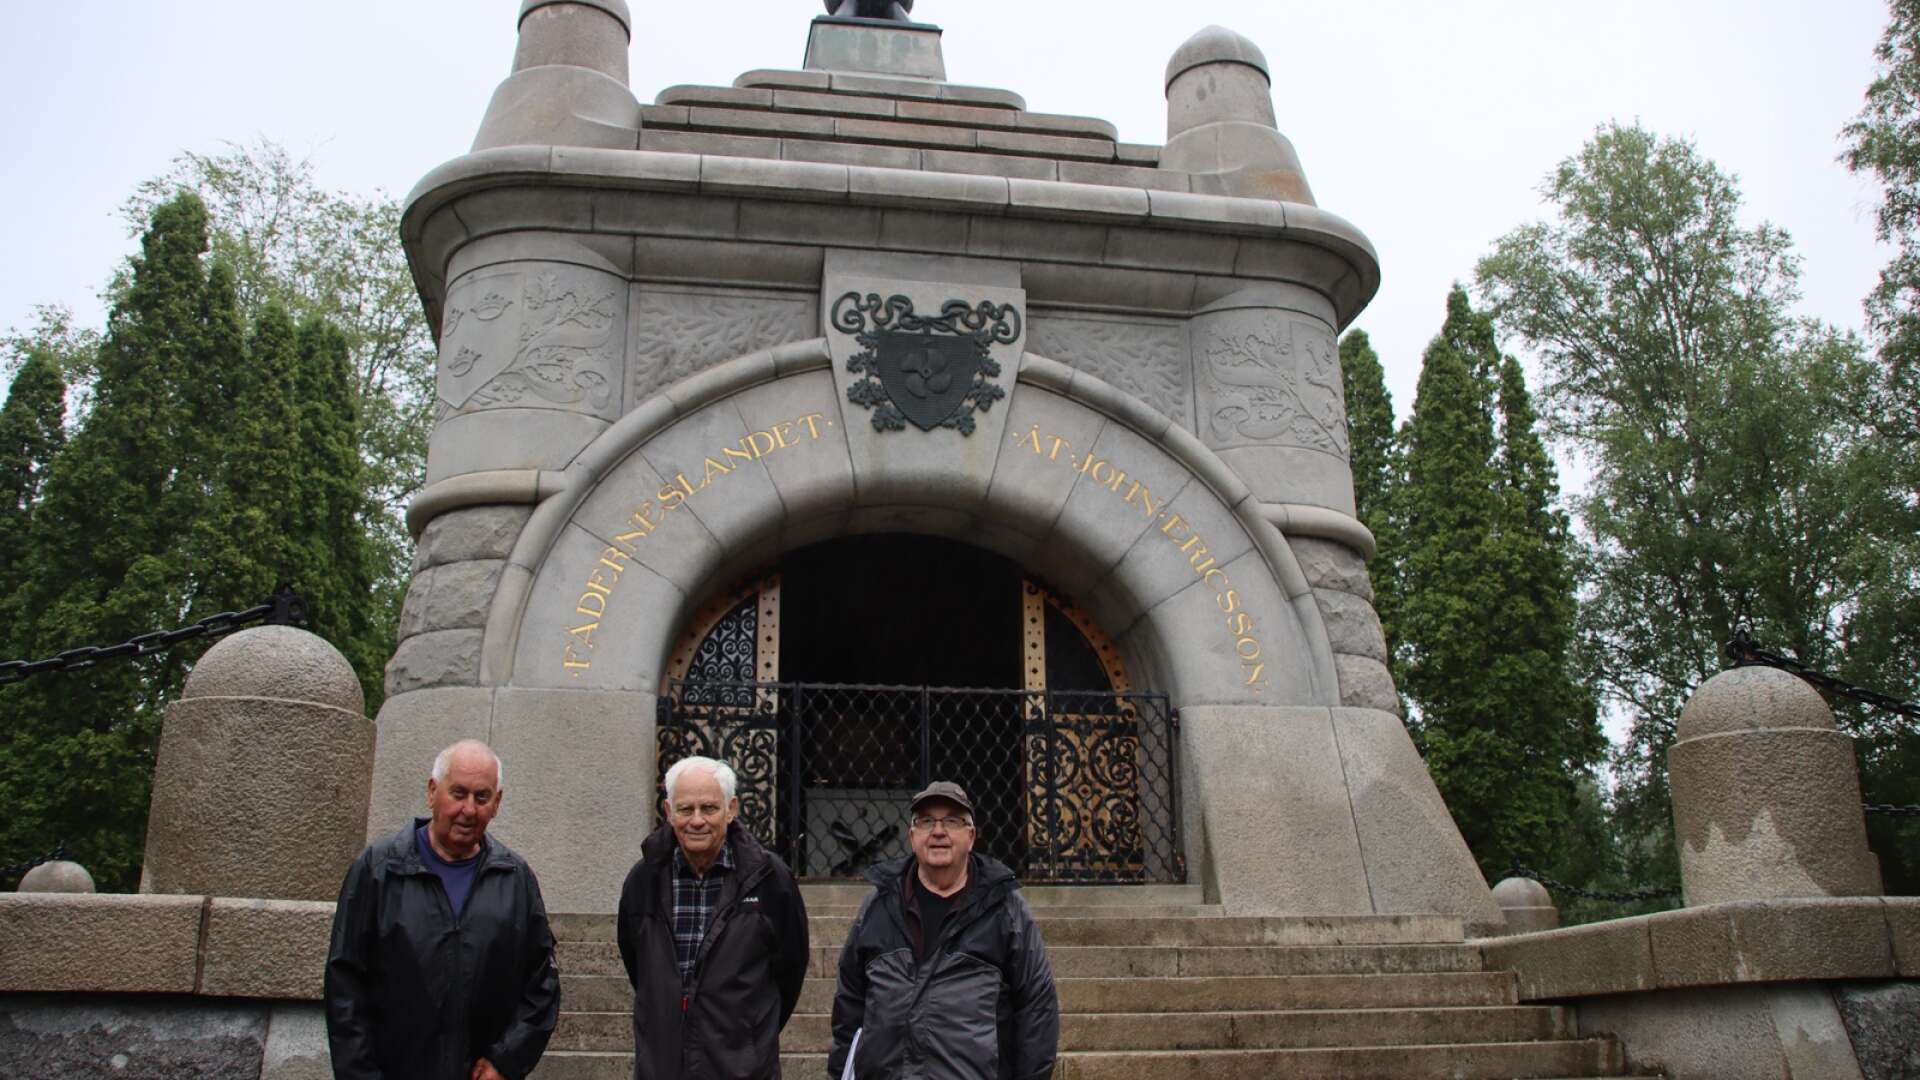 Bosse Olsson, Per-Olov Örtlund och Göran Olsson är samtliga medlemmar i John Ericsson gruppen. Här står de framför det ståtliga mausoleet som ligger beläget på kyrkogården. 